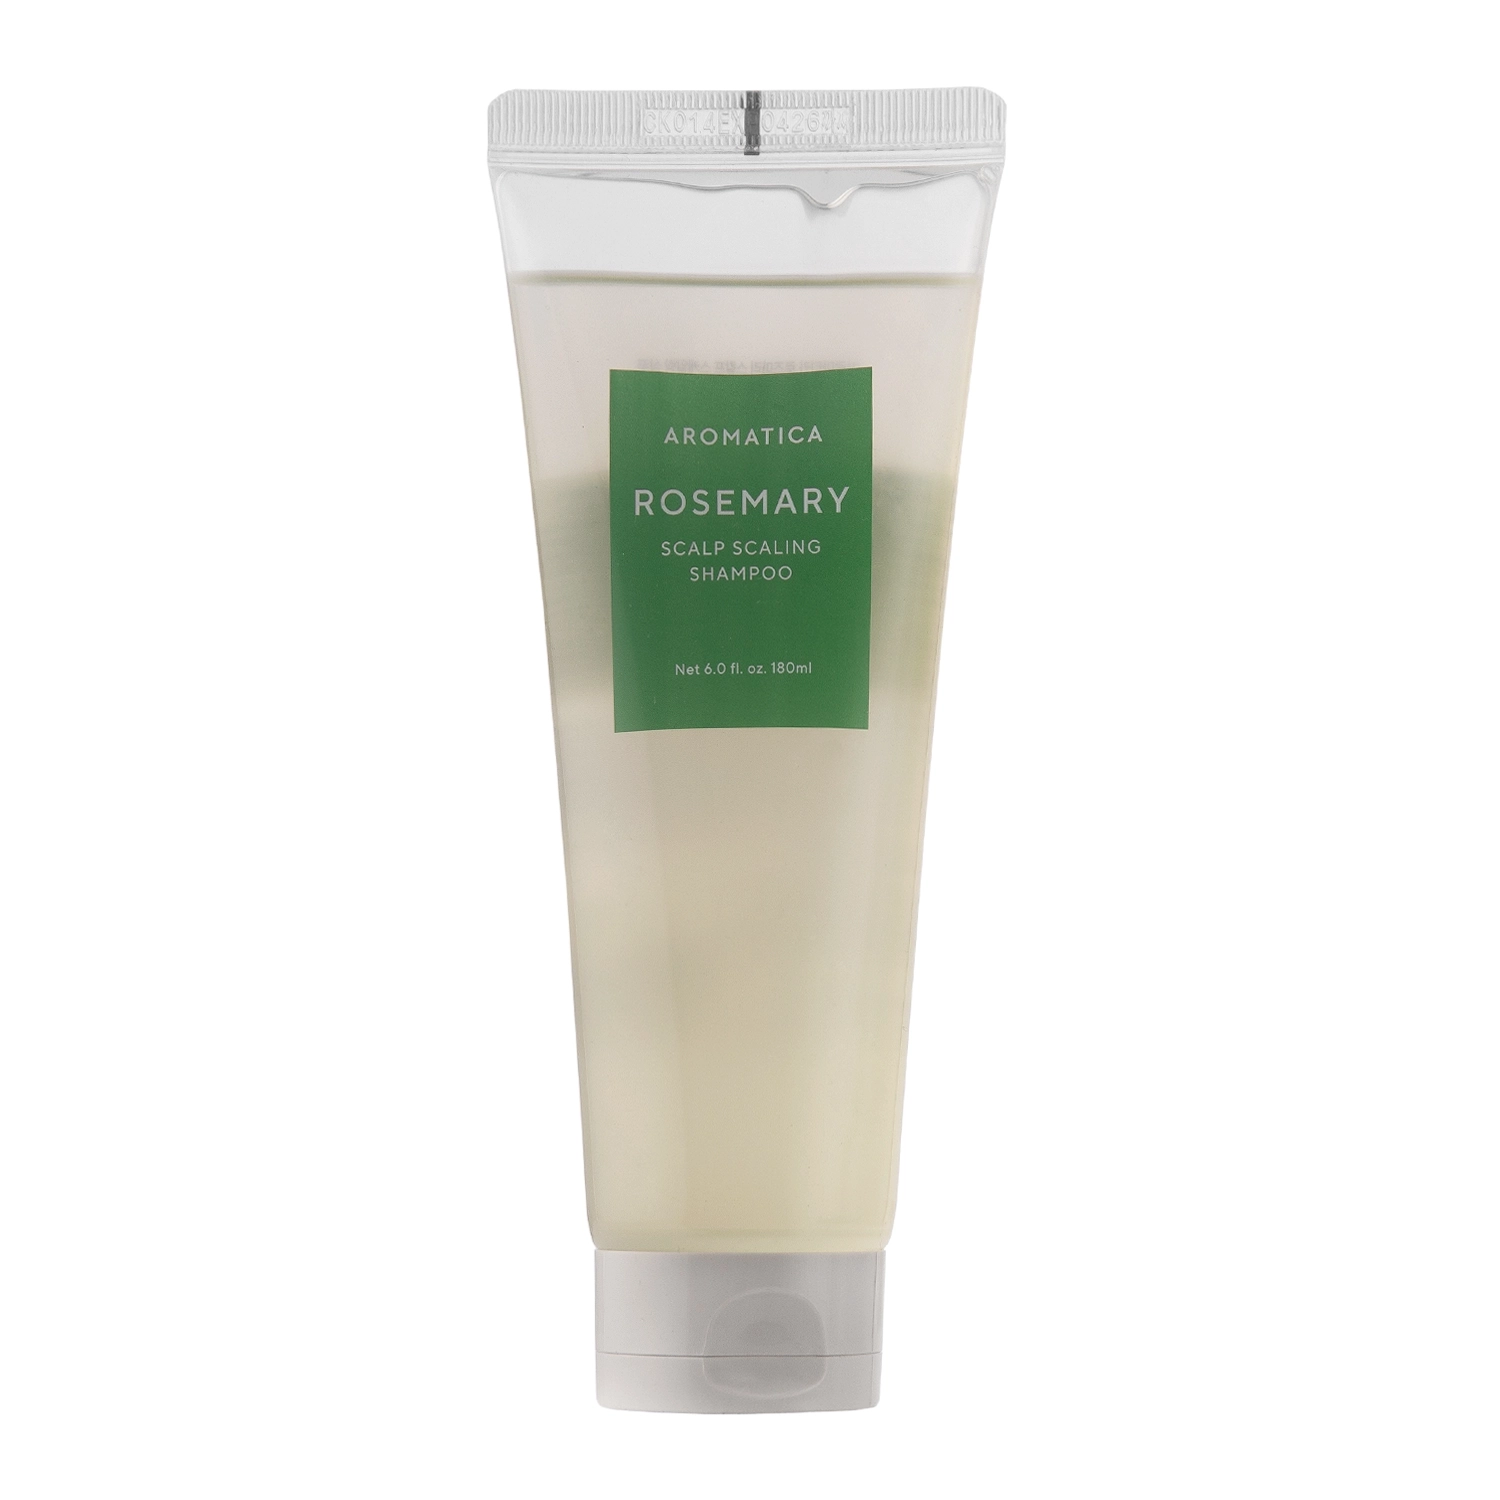 Aromatica - Rosemary Scalp Scaling Shampoo - Oczyszczający Rozmarynowy Szampon - 180ml